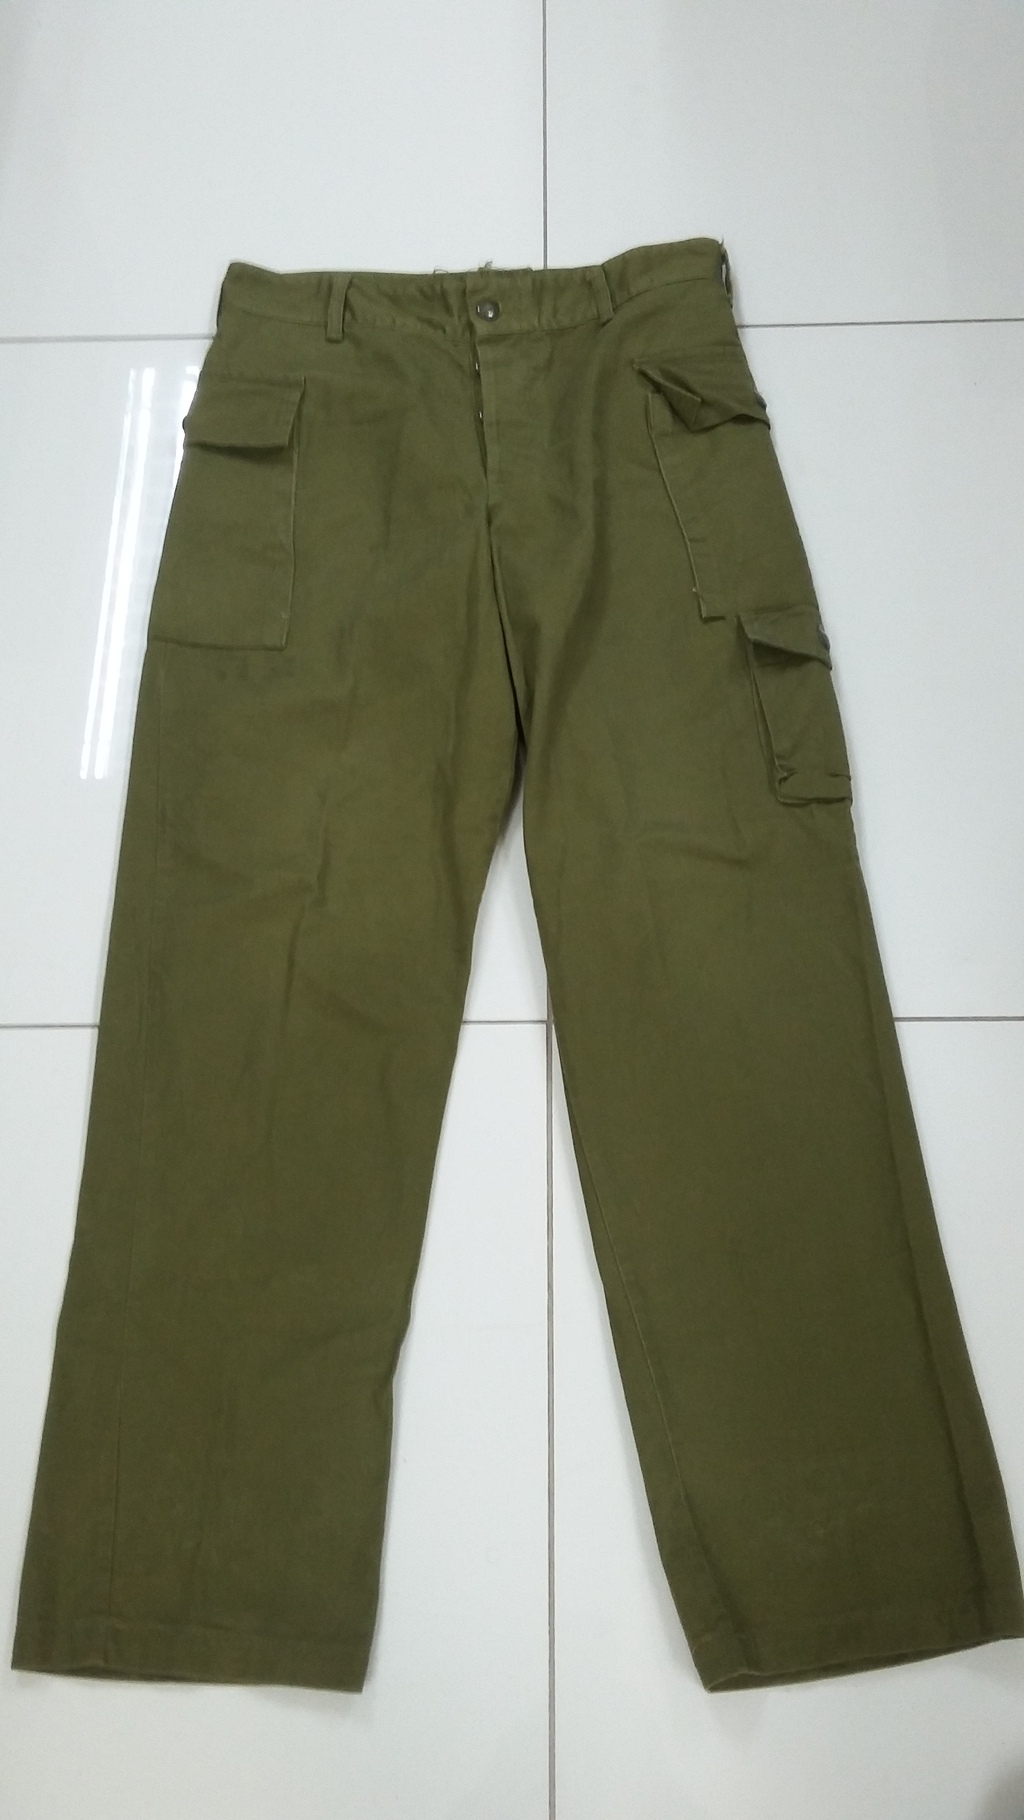 IDF OD pants 20151014_0841151_zpsf5zmygyk